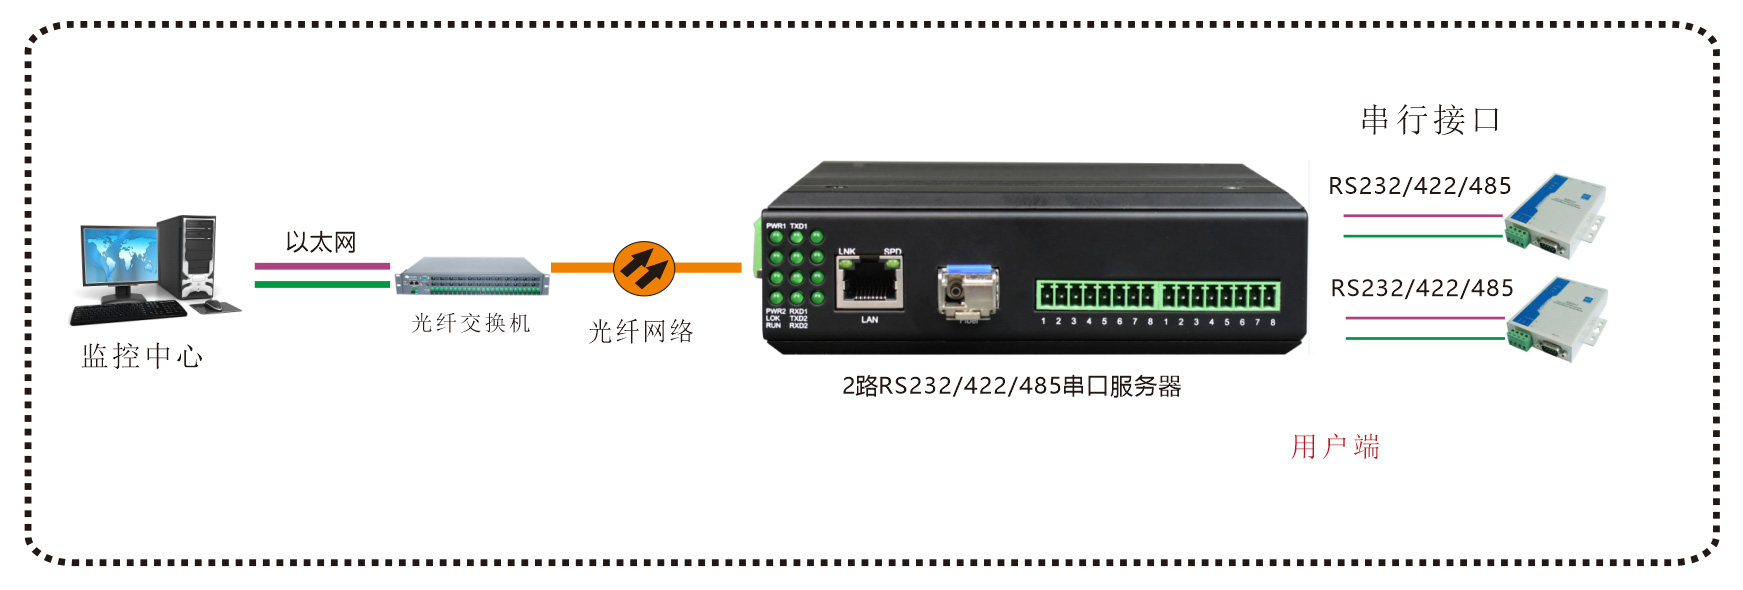 工业轨式-2路串口服务器-(带WEB与SNMP网管)-方案图一